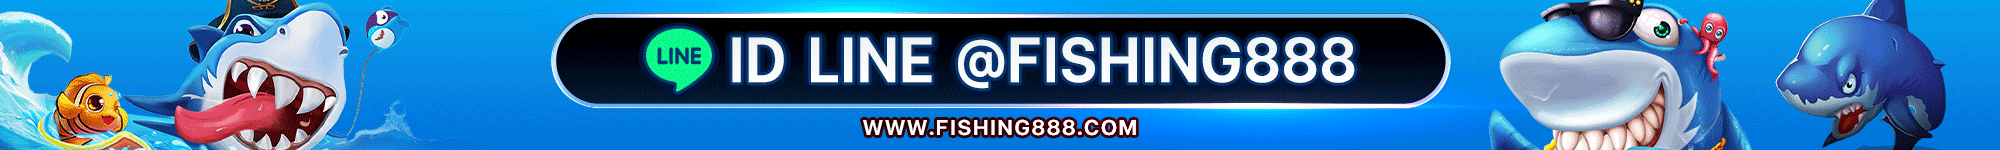 Fishing888 : Fishing888.com